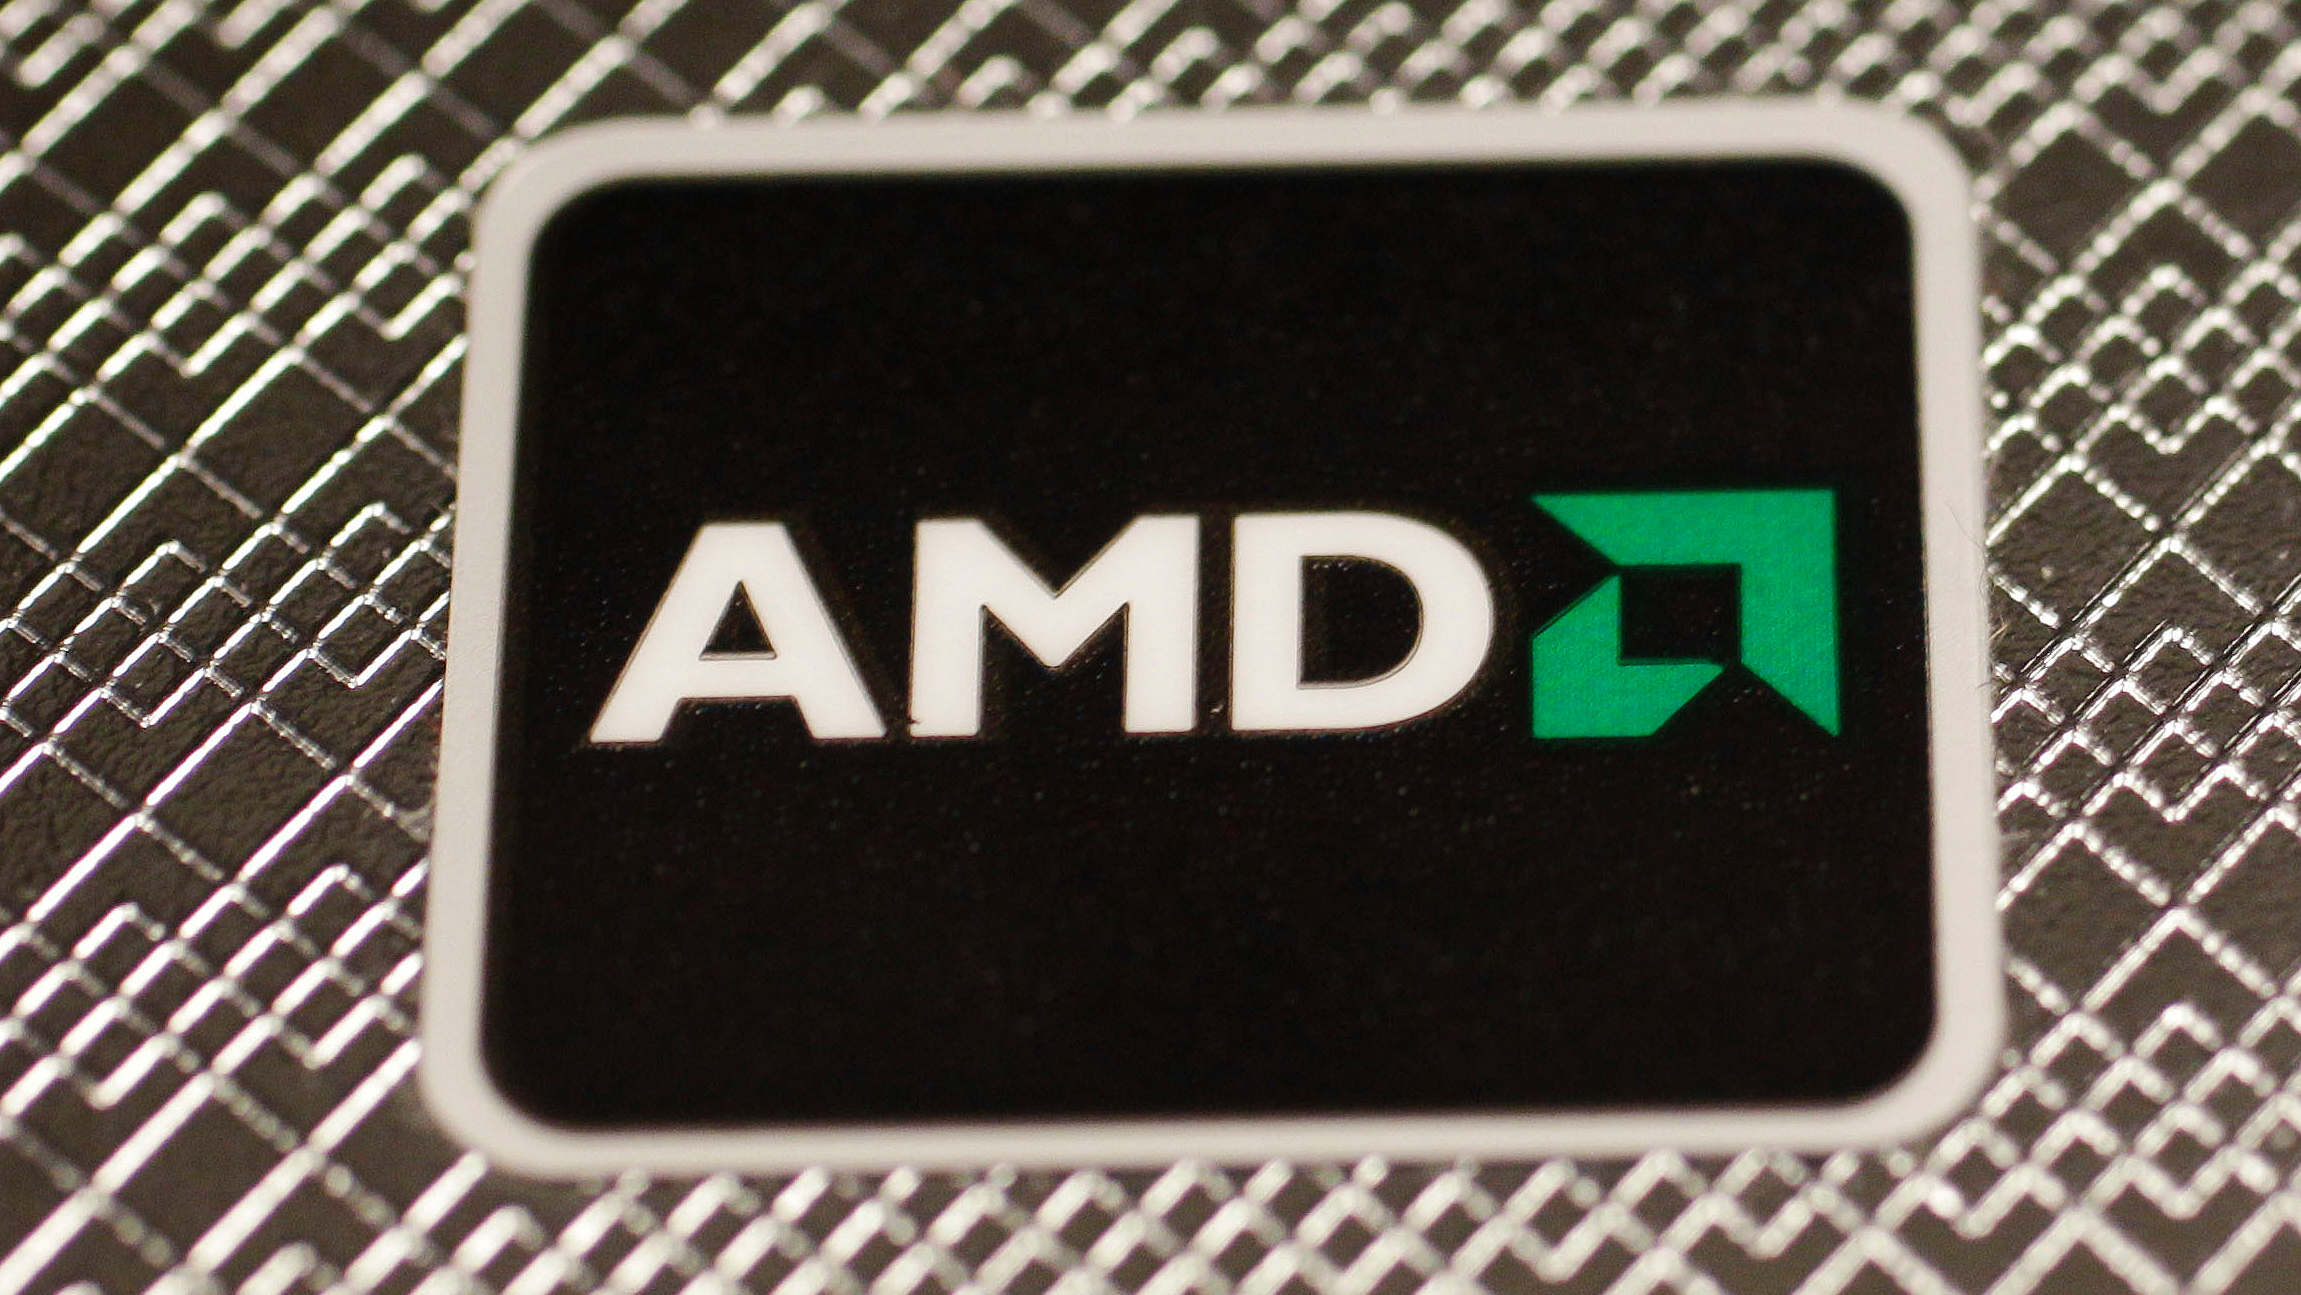 Патч AMD. Fix say